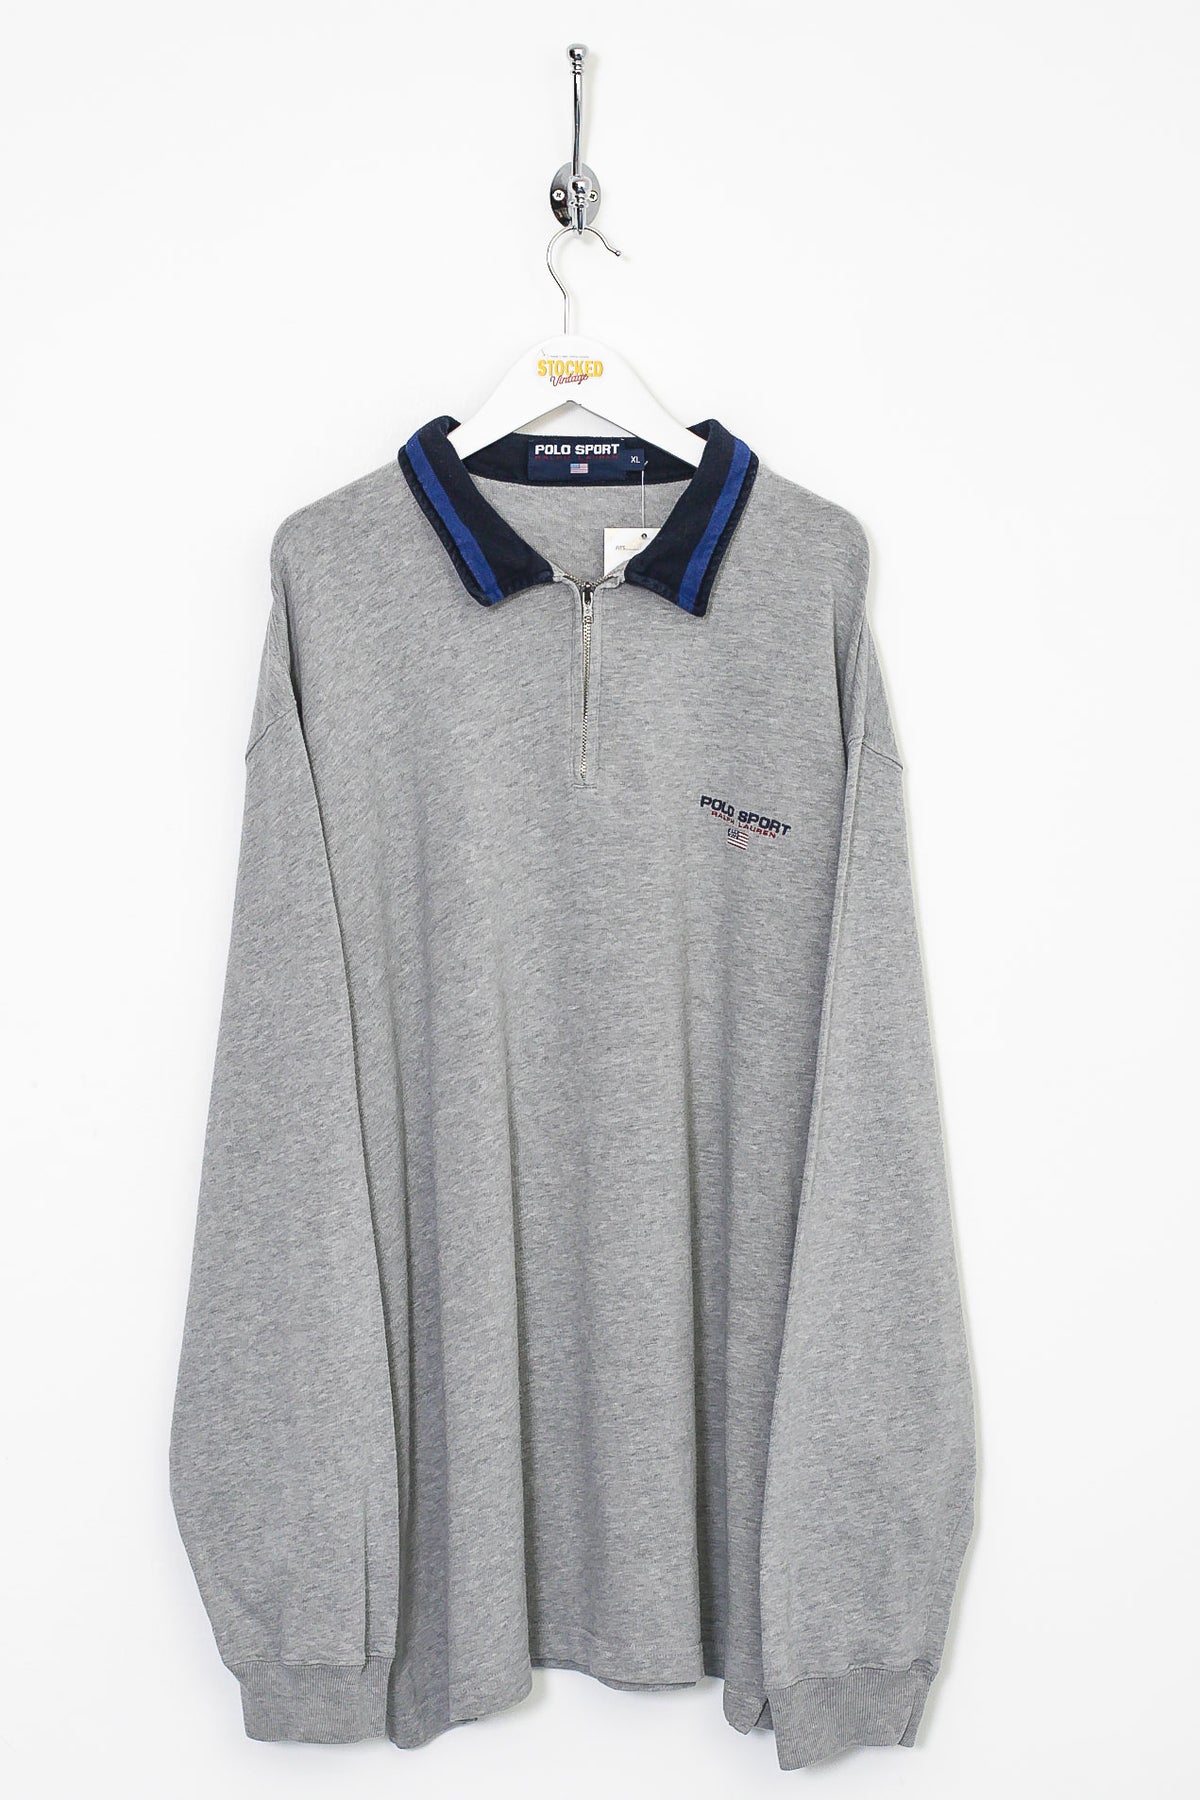 90s Ralph Lauren Polo Sport 1/4 Zip Sweatshirt (XL)